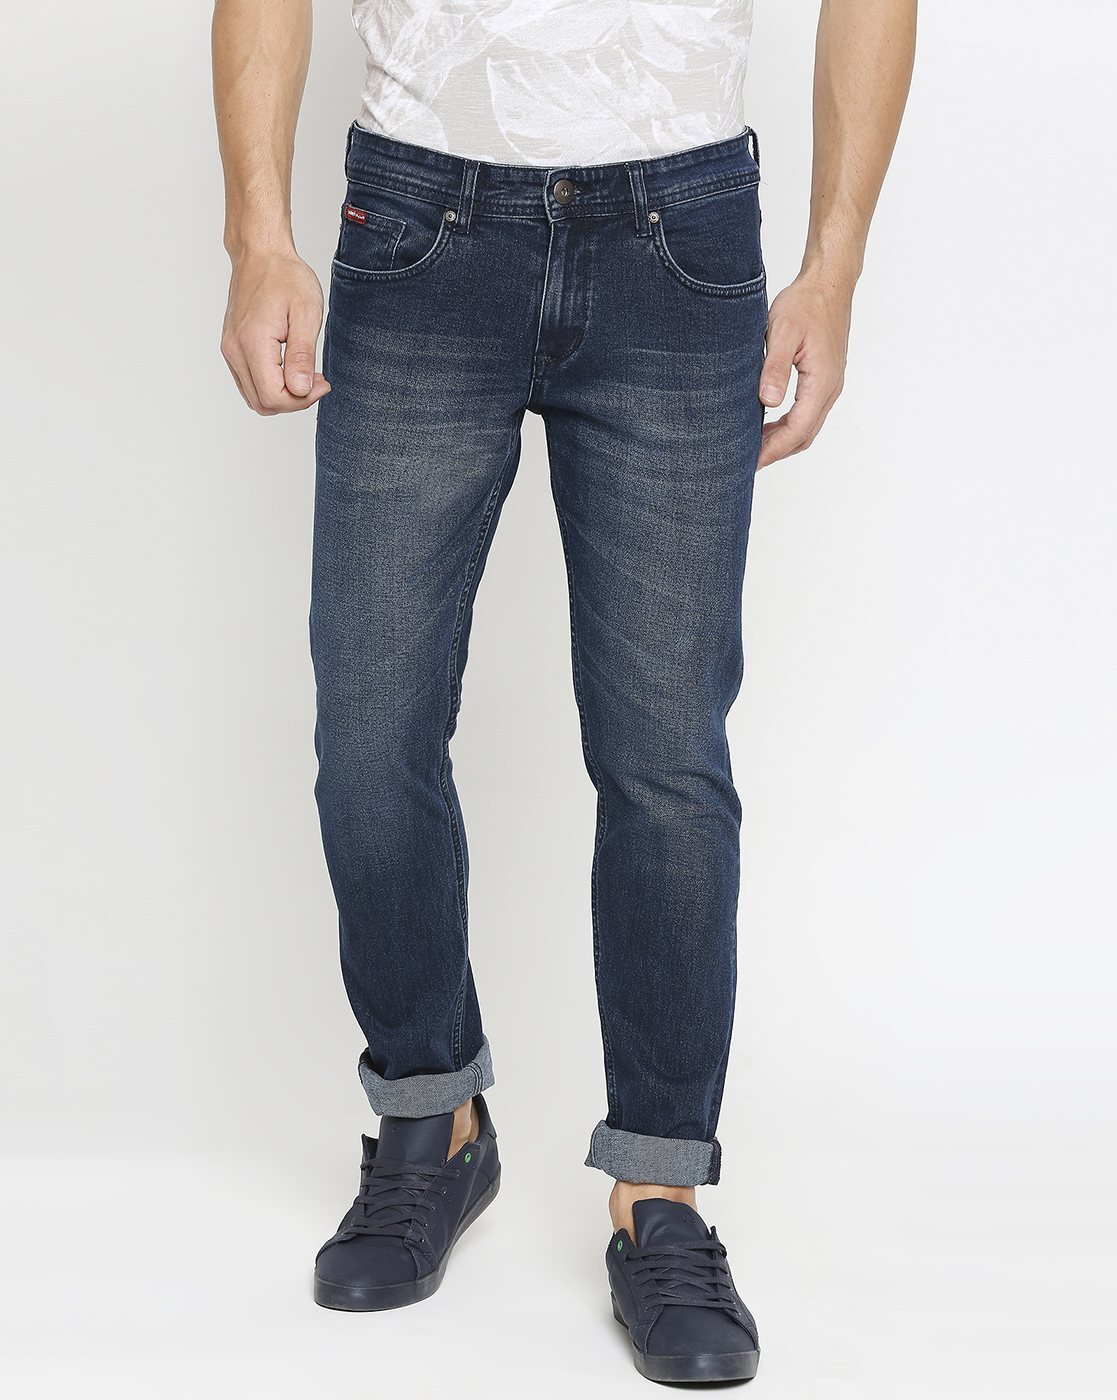 Vintage Lee Cooper Jeans Men High Waisted Rise Stonewash Blue Denim Jeans  W32 L35 Comfort Fit Regular Leg Jeans Made in Finland - Etsy | Lee cooper  jeans, Mens jeans, Blue denim jeans